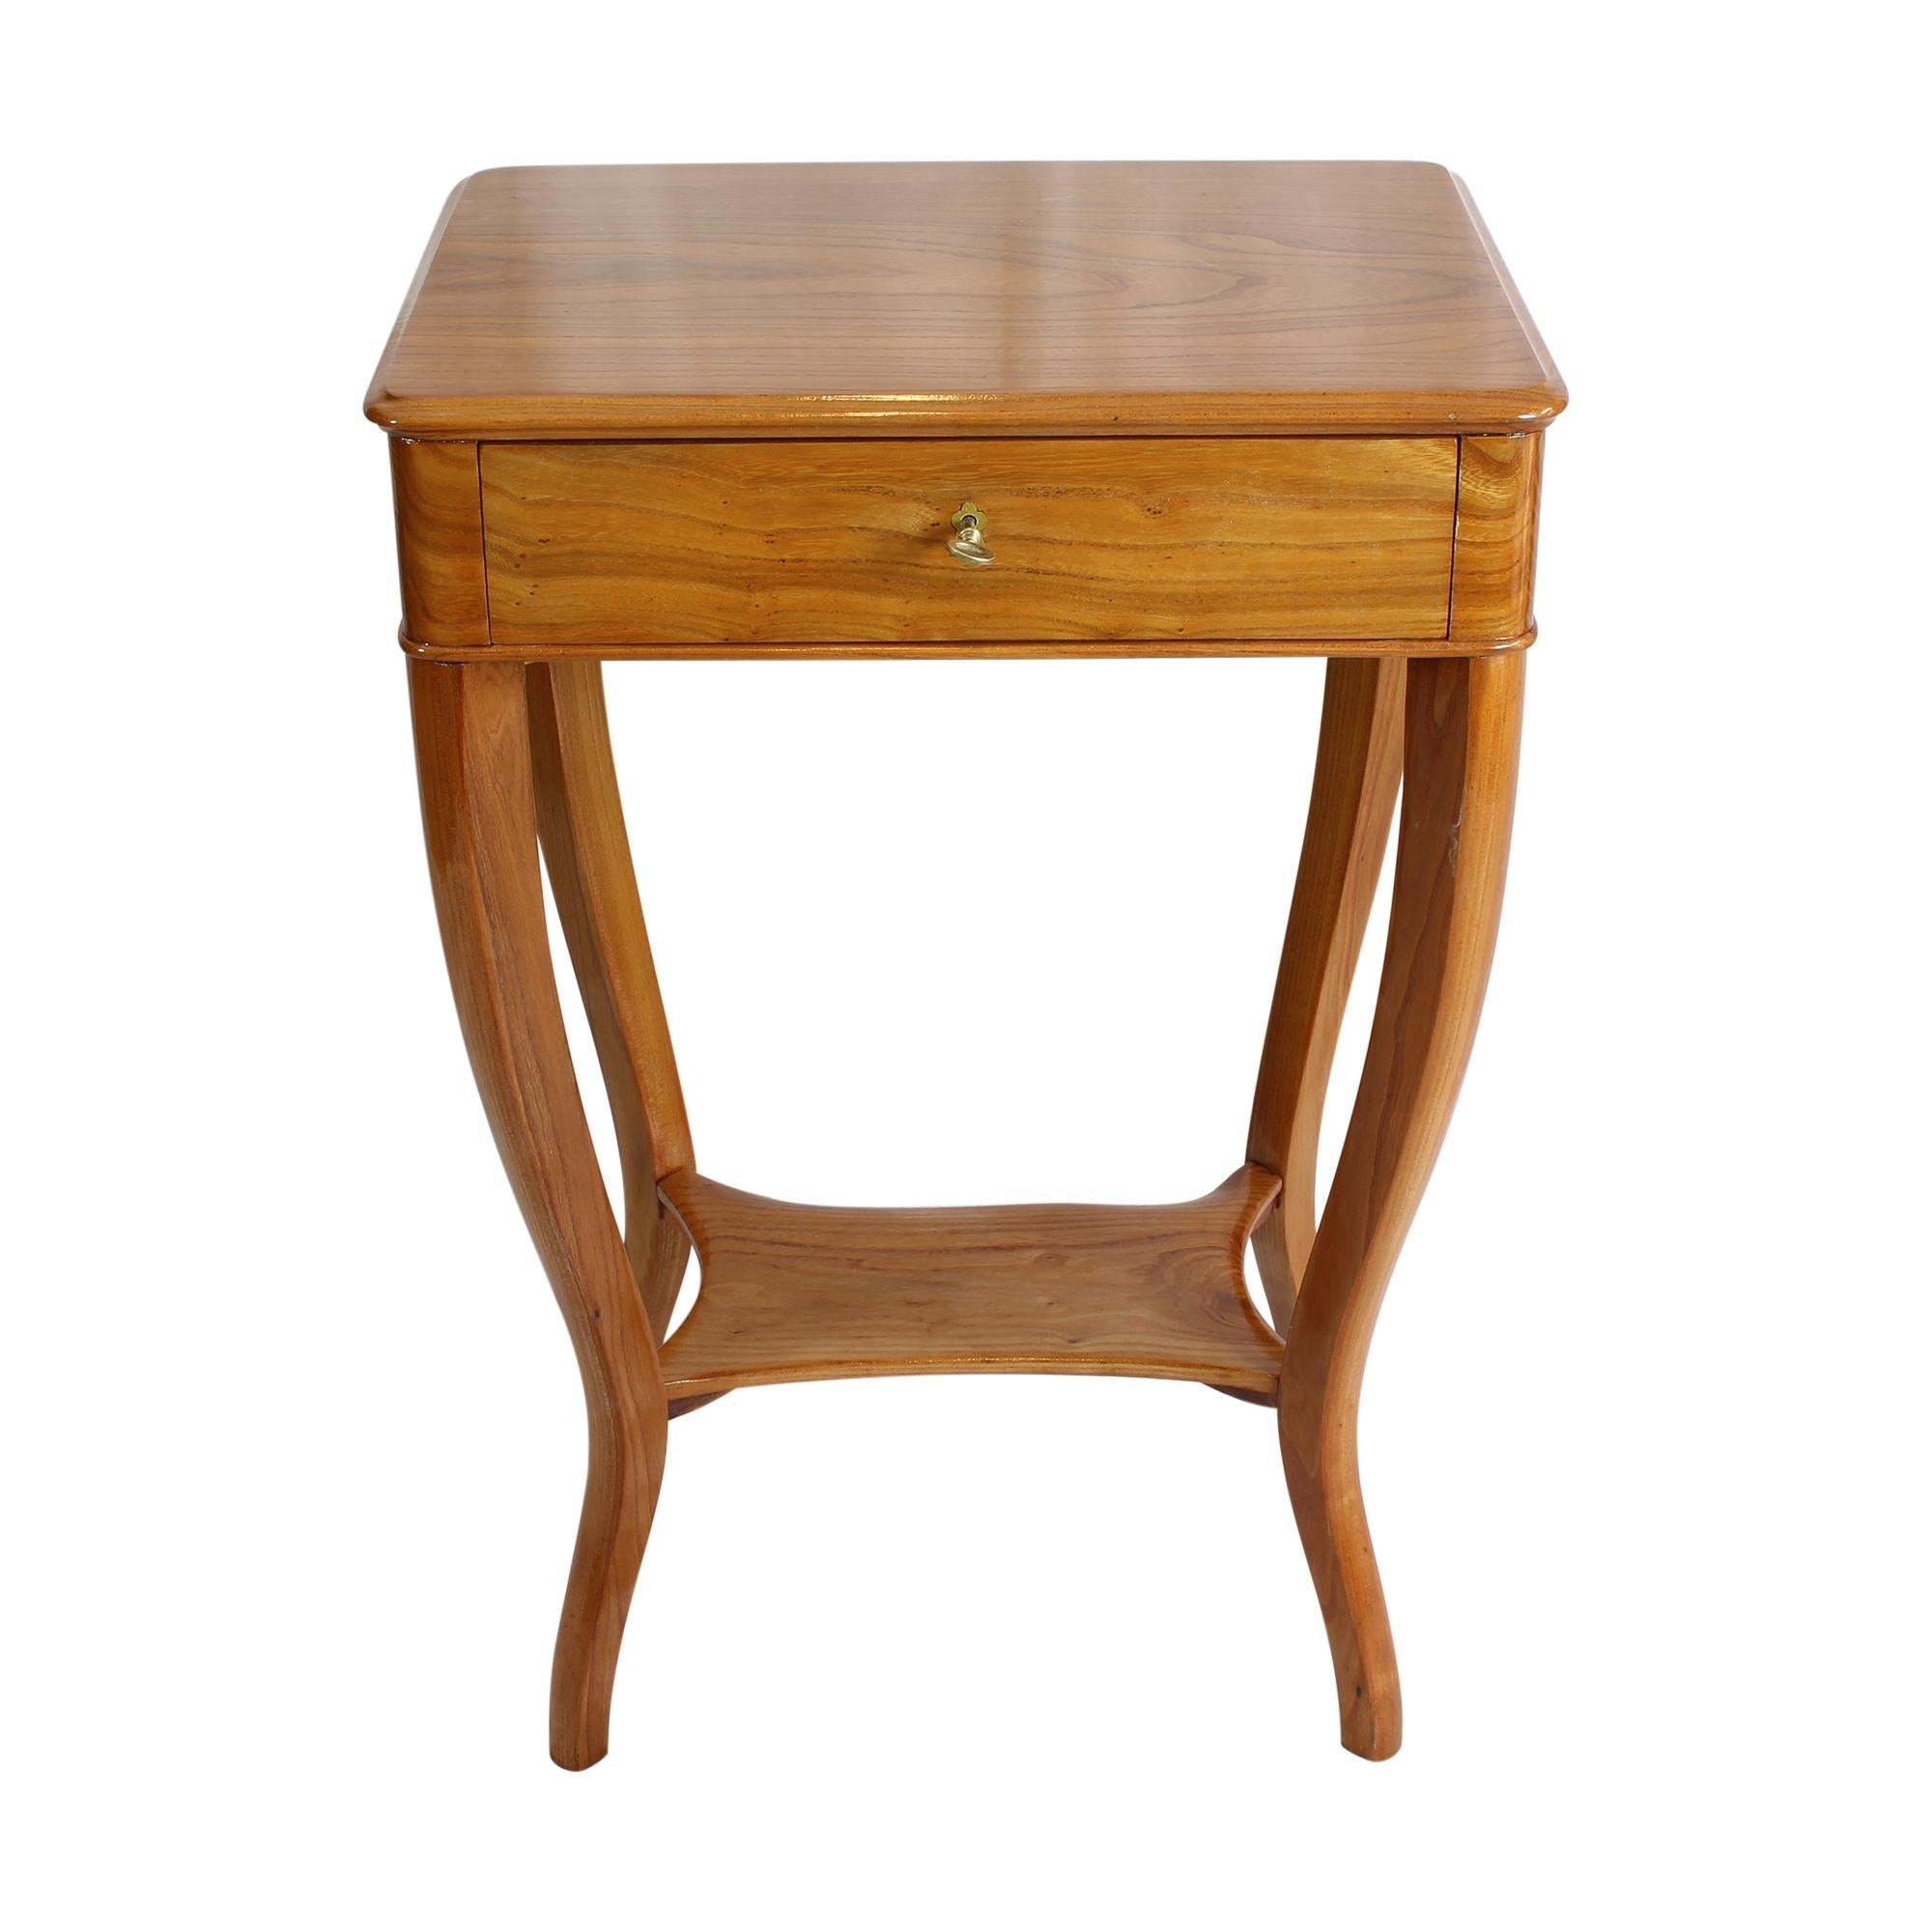 Schöner Näh- oder Beistelltisch aus Ulmenholz, die Inneneinteilung ist aus Kirschbaumholz gefertigt. Der Tisch stammt aus der Zeit des Biedermeiers, genauer gesagt aus der Zeit um 1820. Sehr schöne geschwungene Beine mit einer abschließbaren